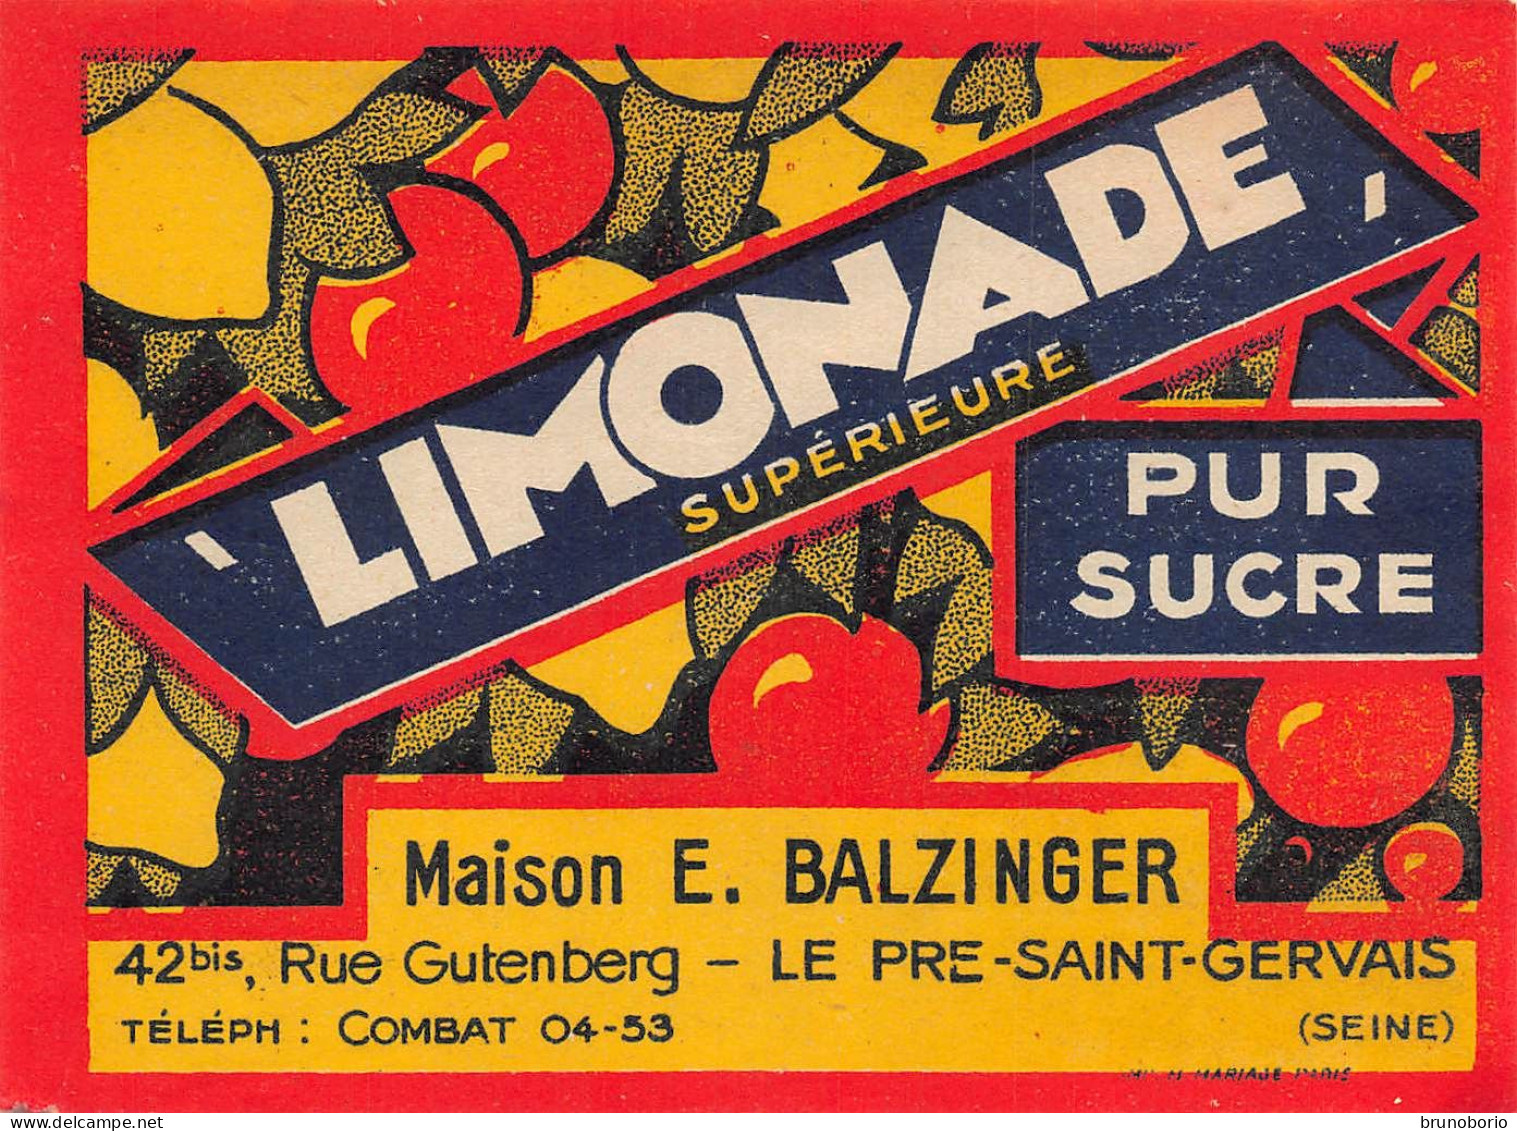 00147  "LIMONADE SUPERIEURE PUR SUCRE - MAISON E. BALZINGER - LE PRE-SAINT.VVERVAIS /SEINE)"  ETICH. ORIG - Fruits Et Légumes